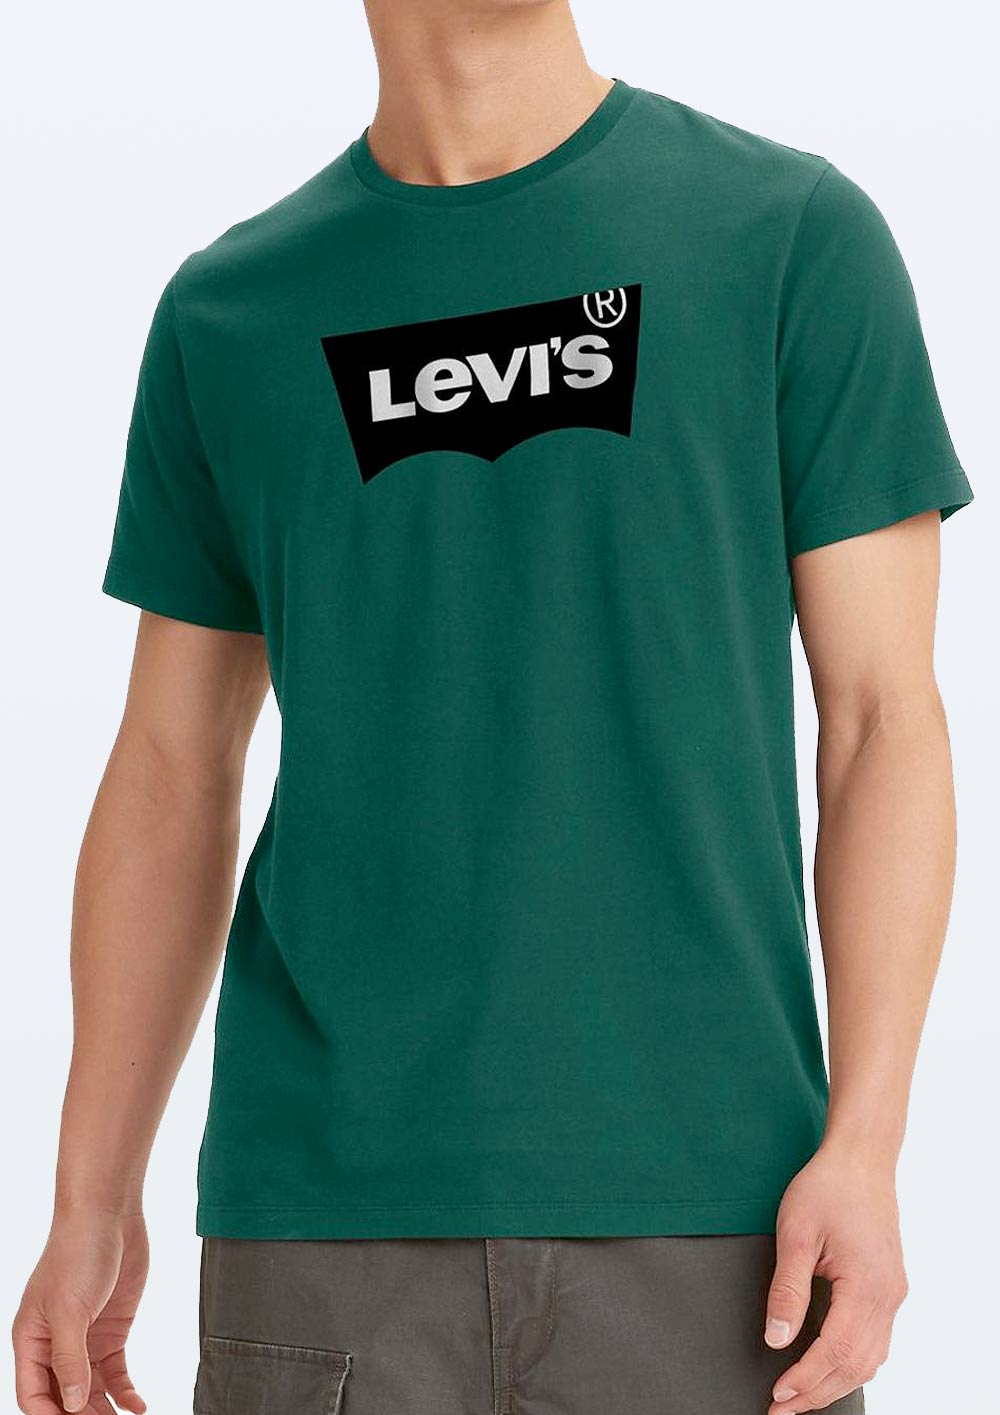 Levis x FCSP T-Shirt "Evergreen" 